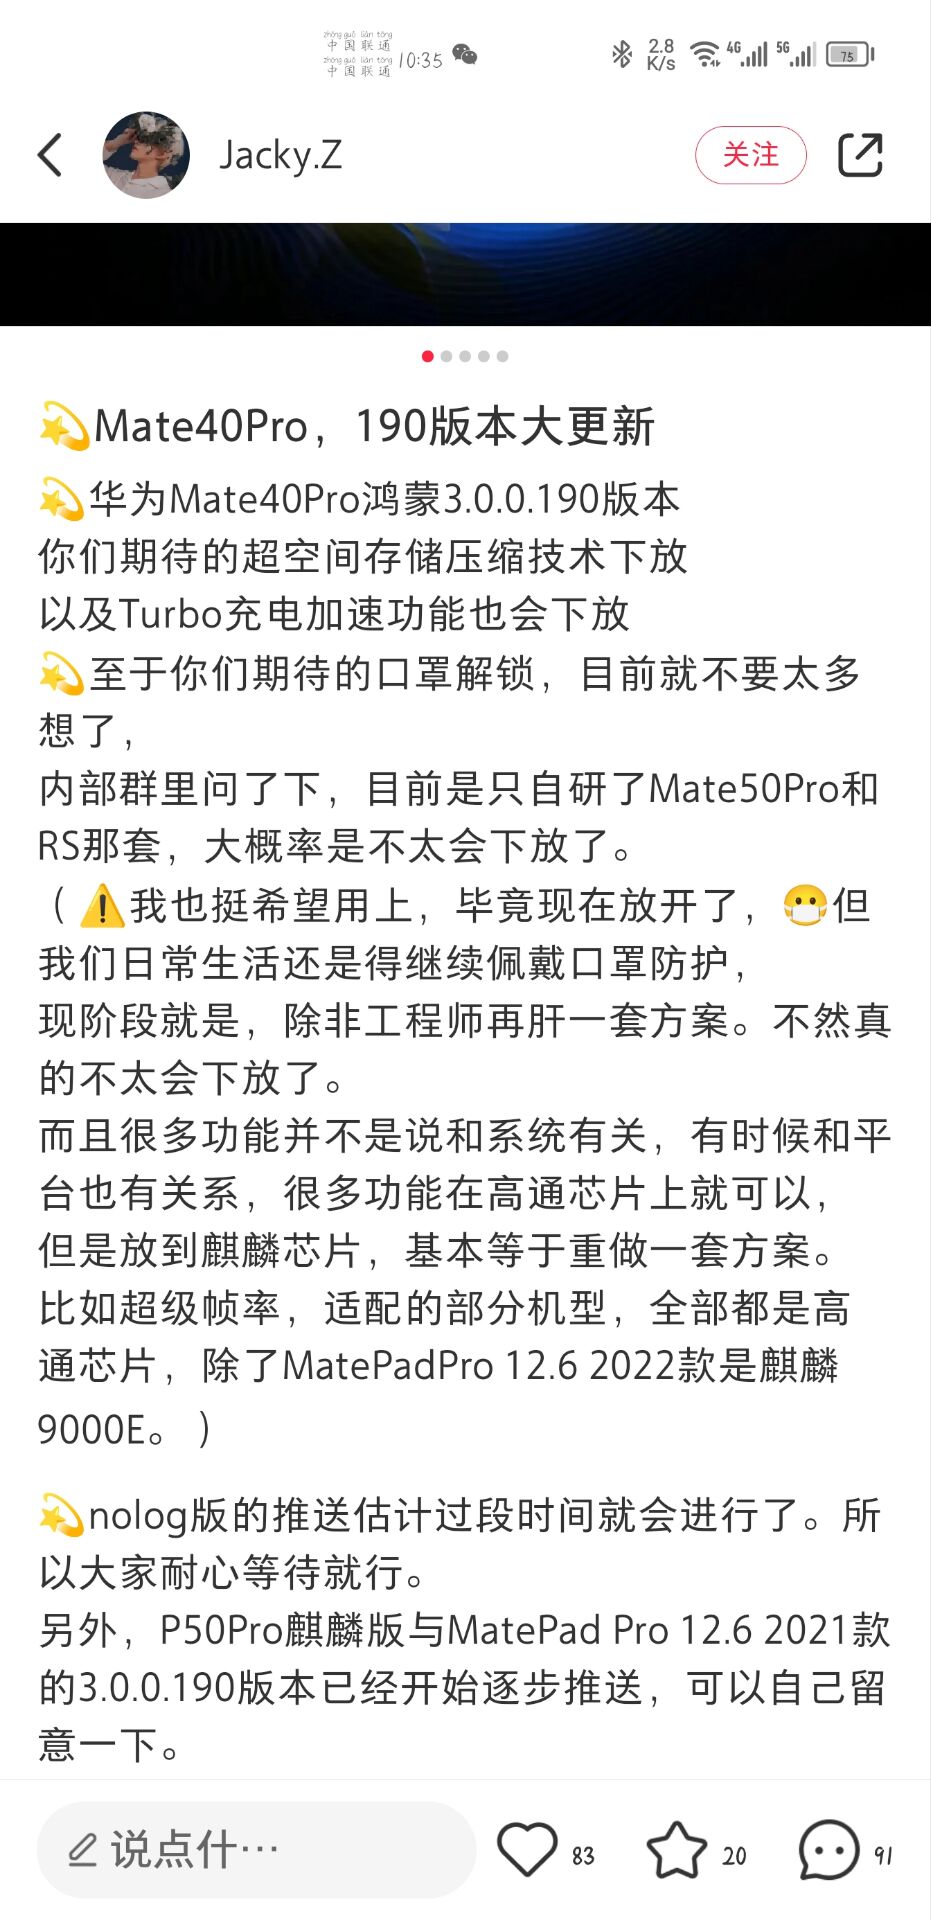 【网传】Mate40Pro，即将发布鸿蒙3.0 190版本大更新